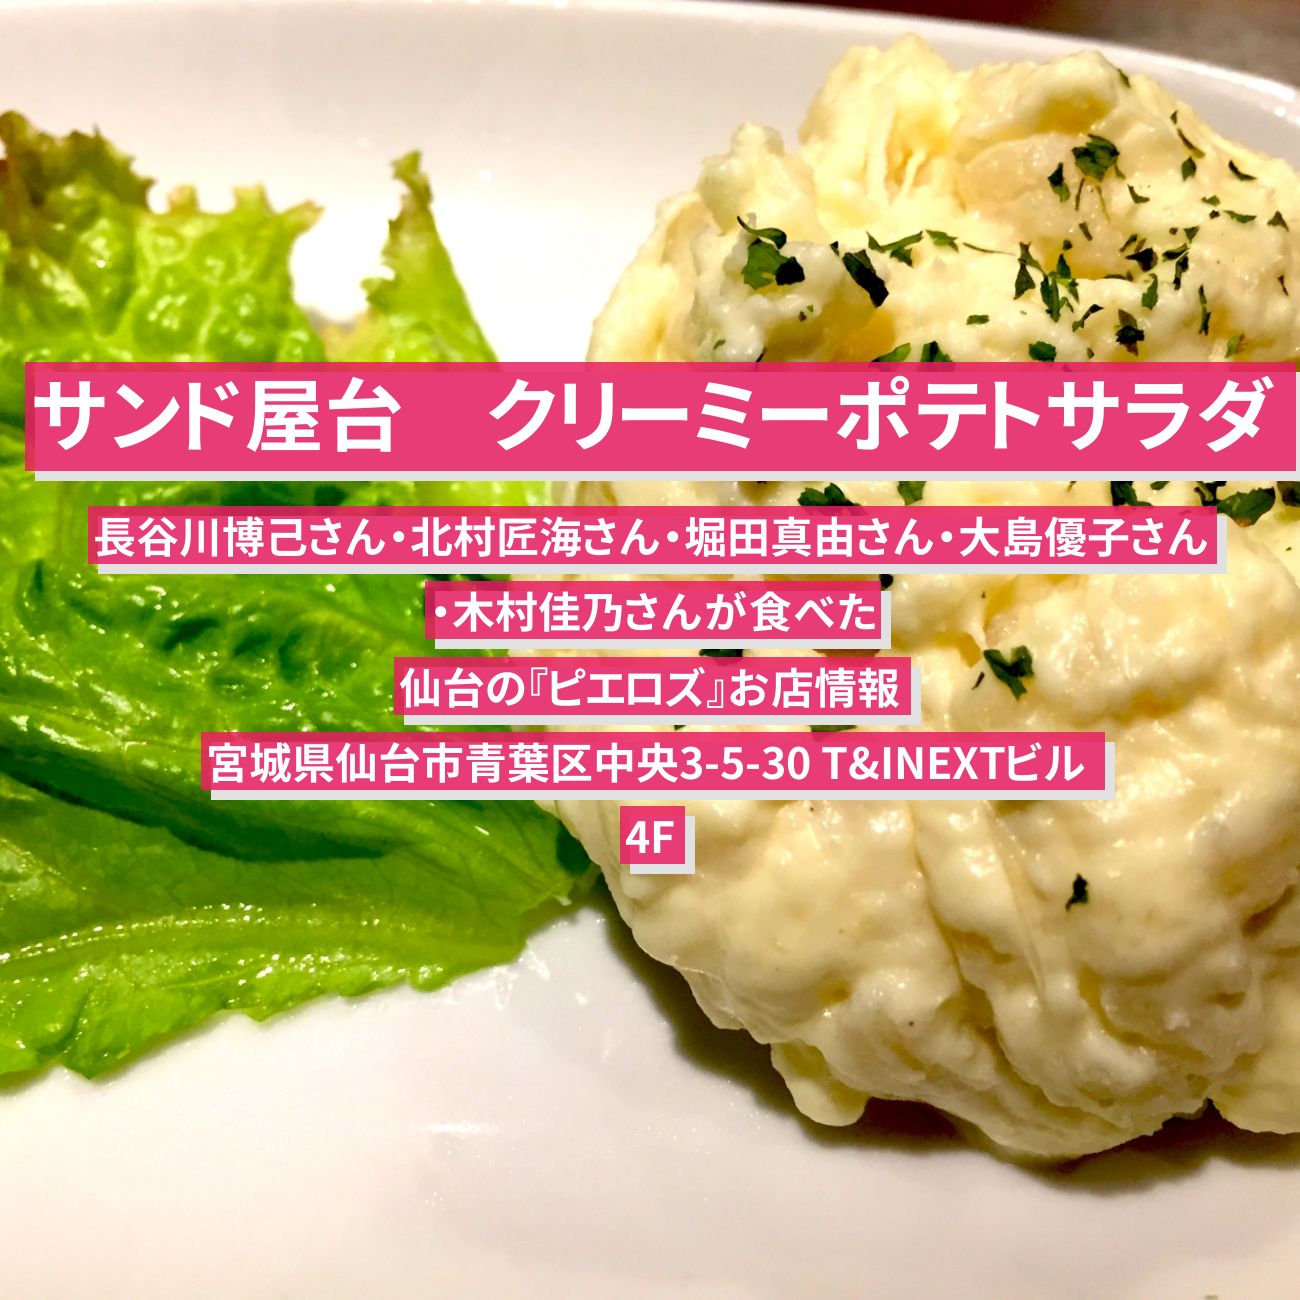 【サンド屋台】クリーミーポテトサラダ『ピエロズ』仙台のお店情報